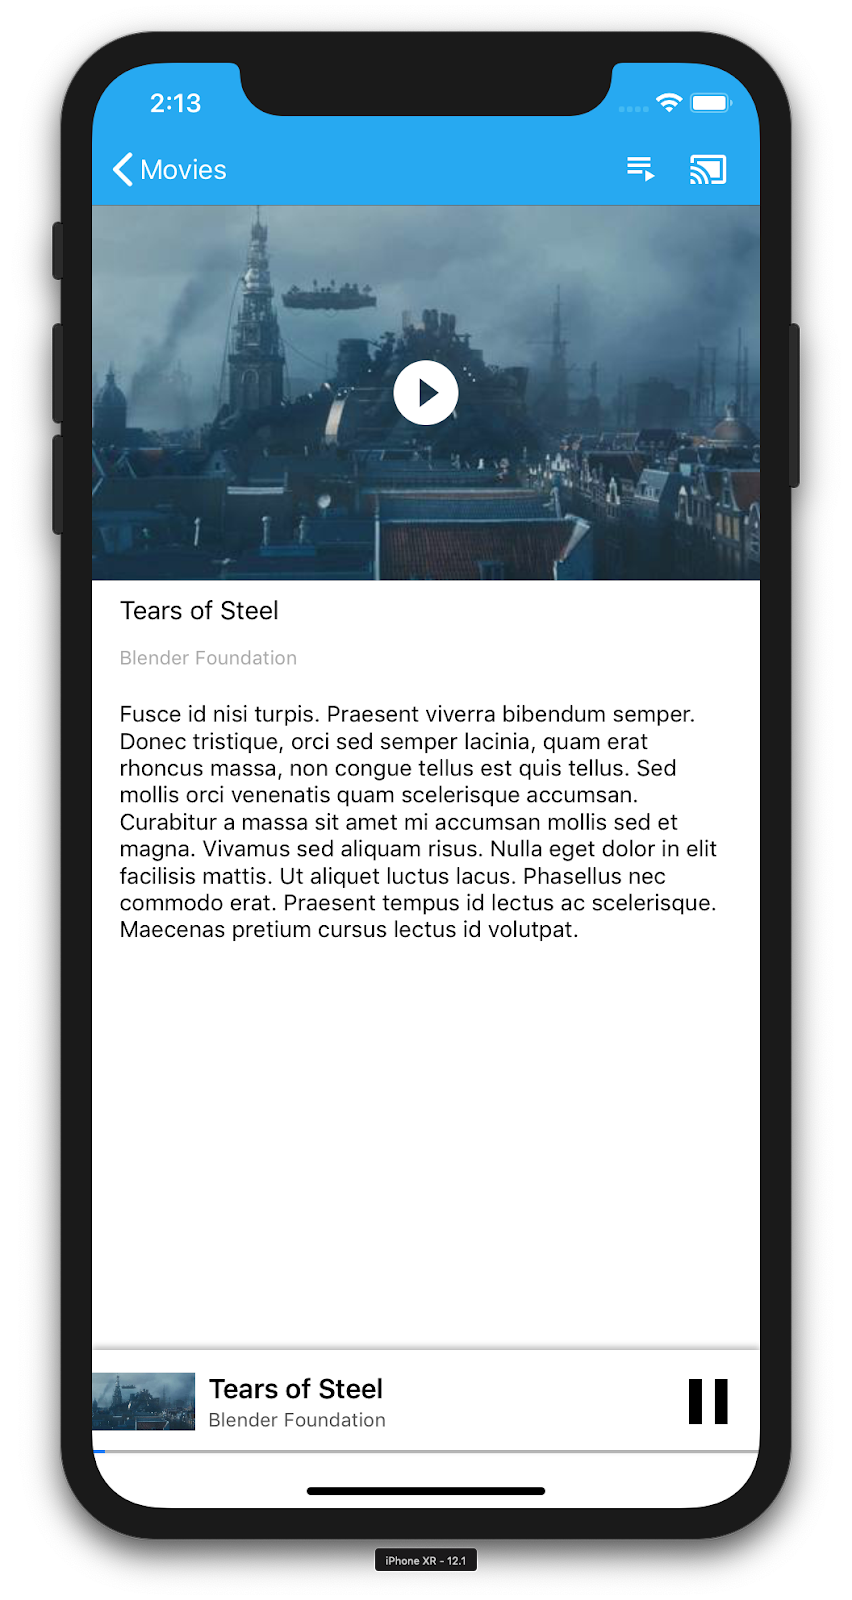 صورة توضيحية لهاتف iPhone يشغّل تطبيق Castالفيديوهات ويعرض تفاصيل عن فيديو محدّد (&quot;Tears of Steel&quot;) يتوفّر في أسفل الشاشة مشغّل مصغّر.